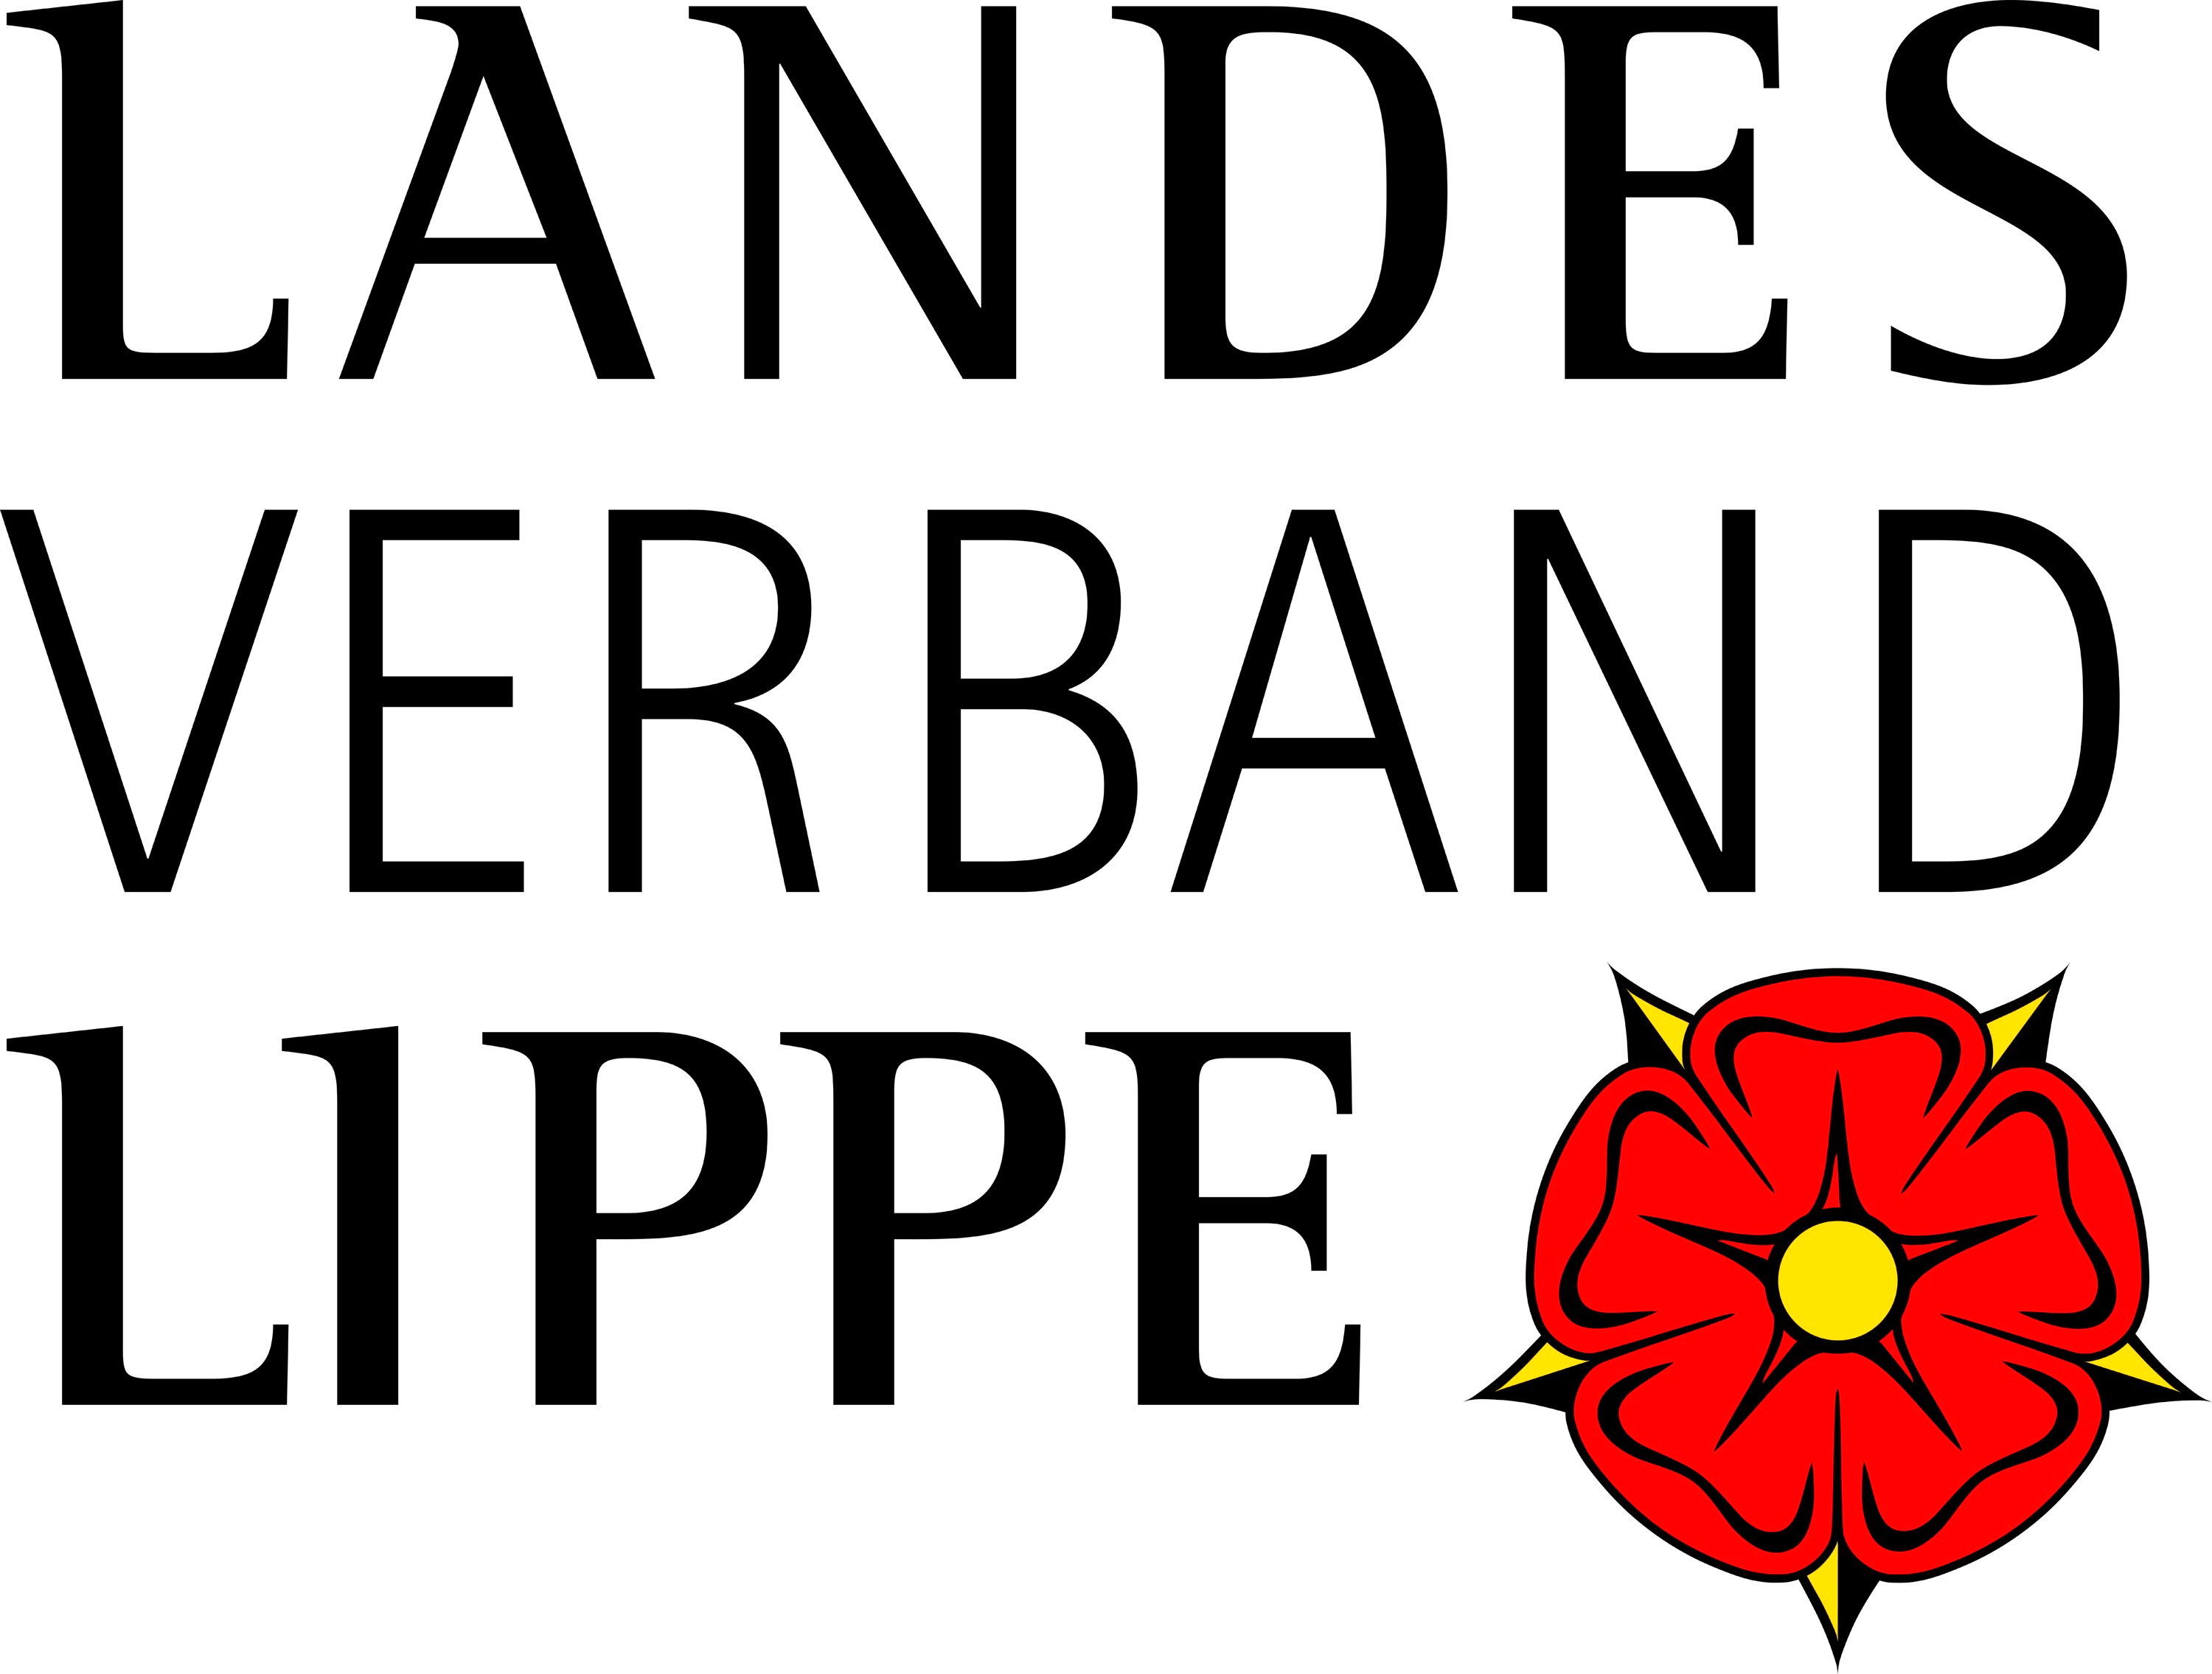 Landesverband Lippe | Kulturagentur